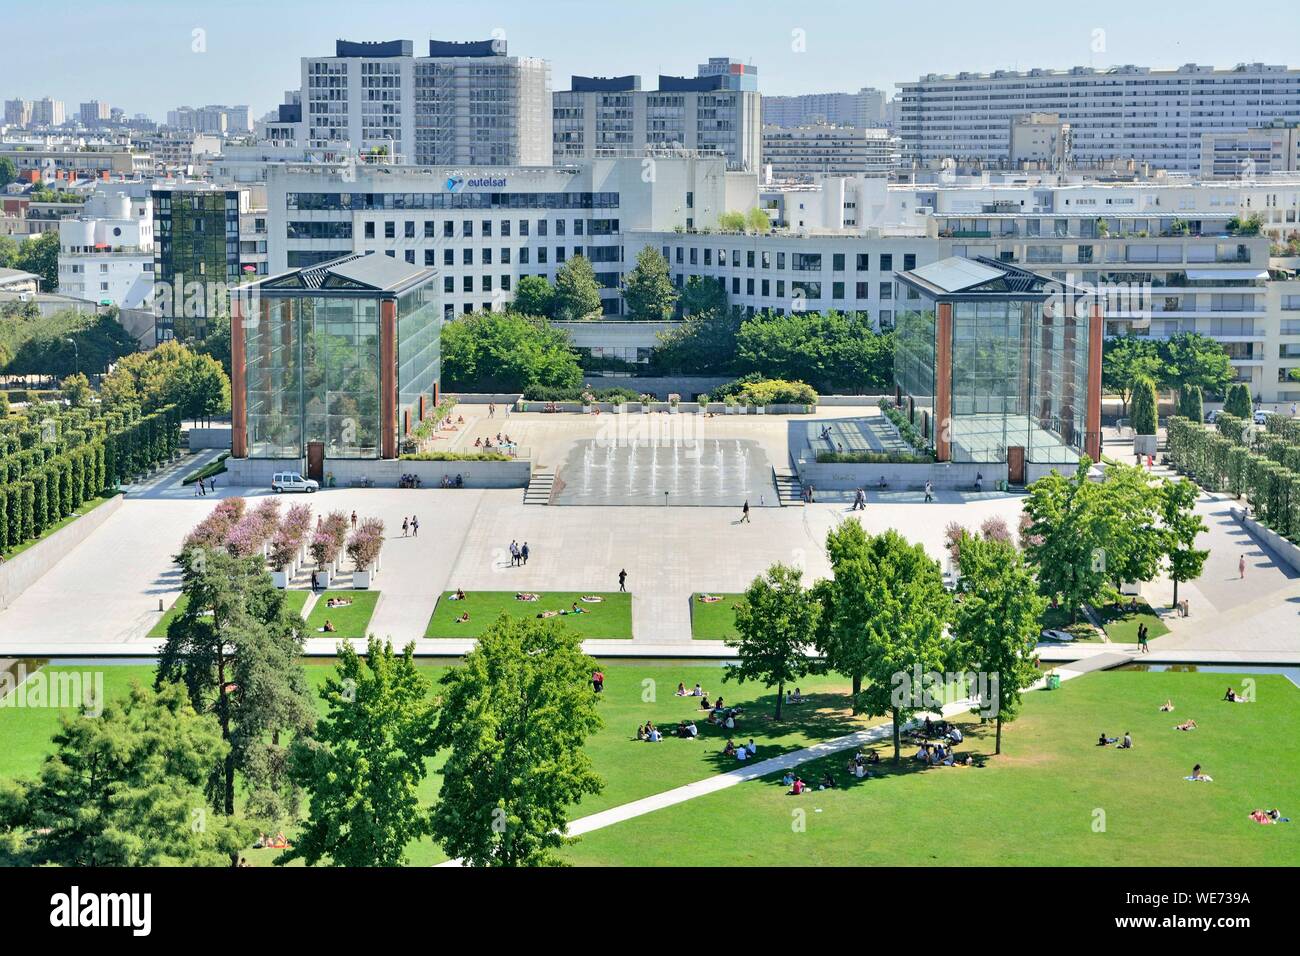 France, Paris, Andre Citroen park (aerial view) Stock Photo